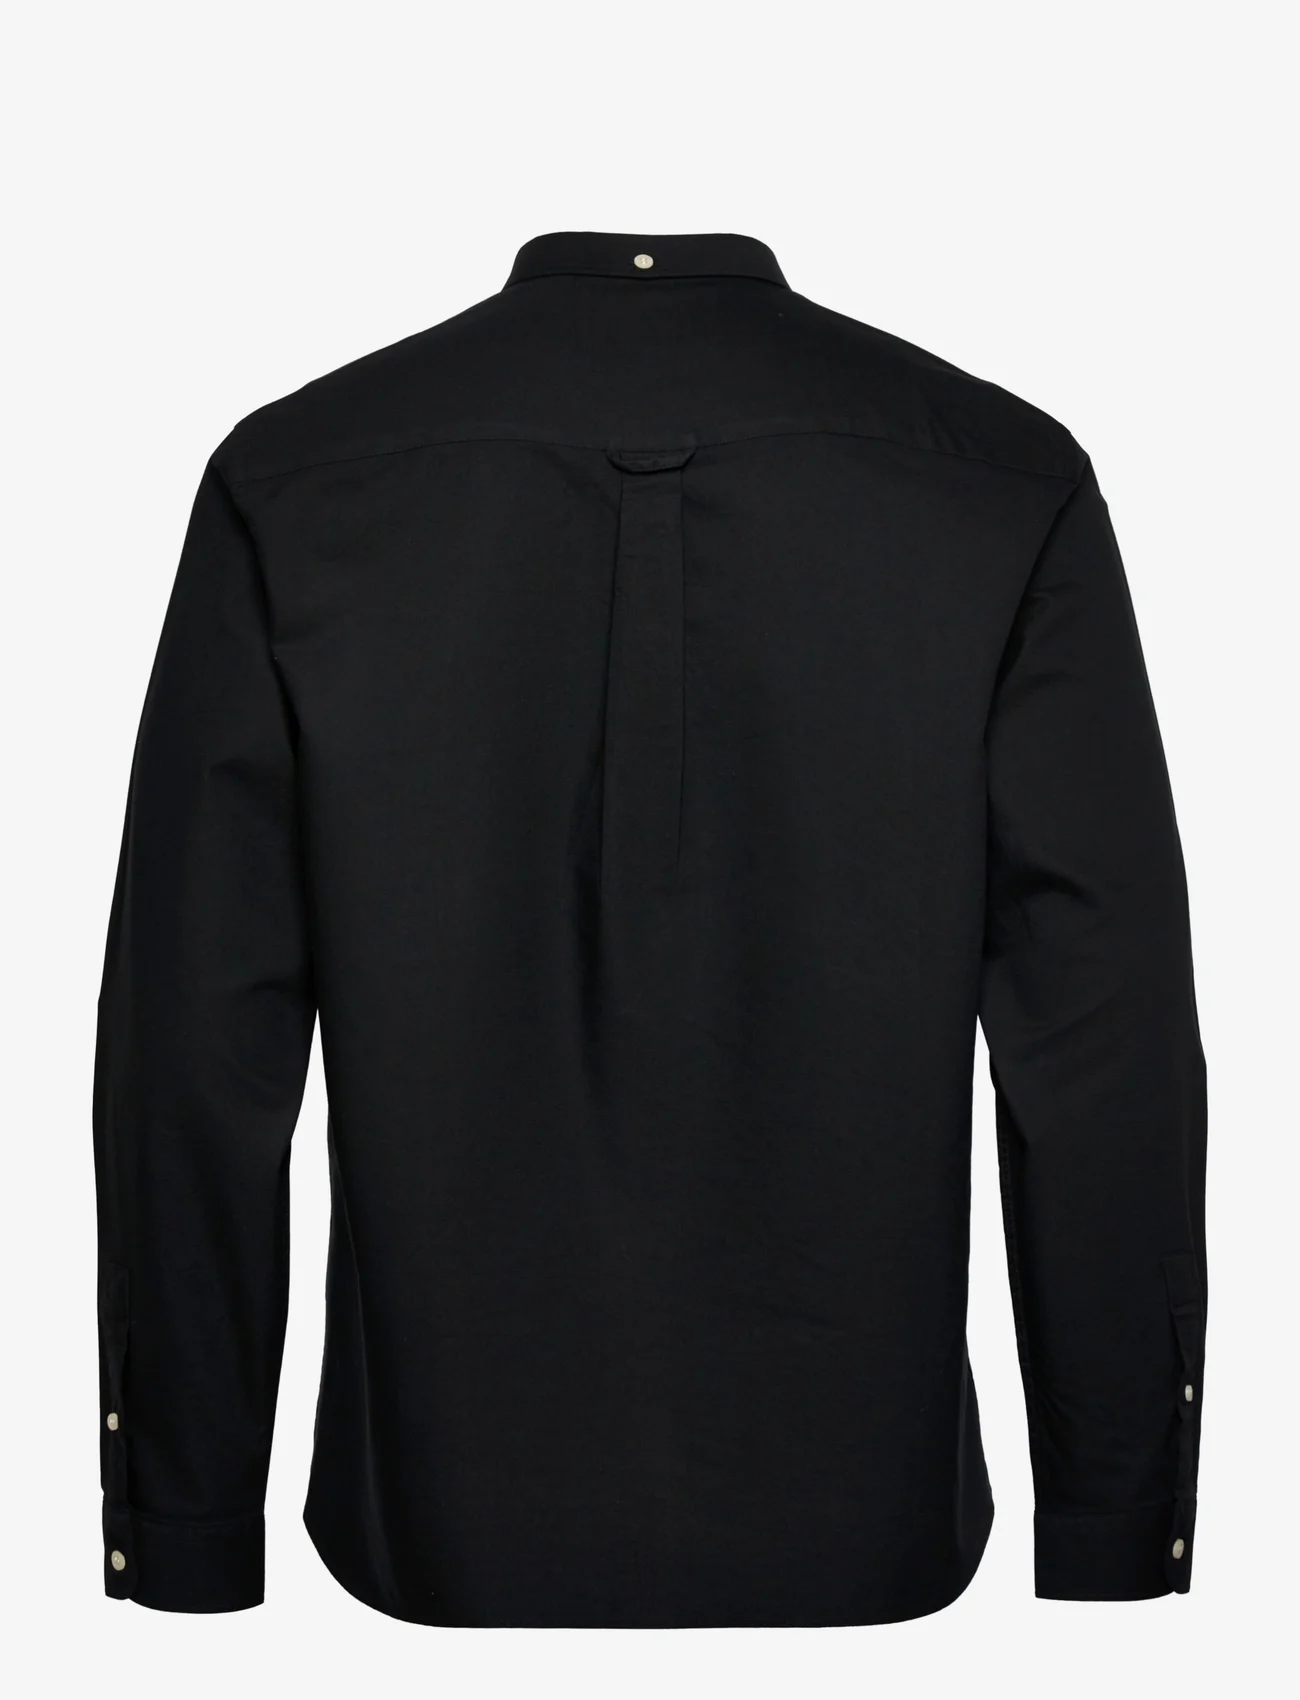 Lyle & Scott - Regular Fit Light Weight Oxford Shirt - oxford shirts - jet black - 1